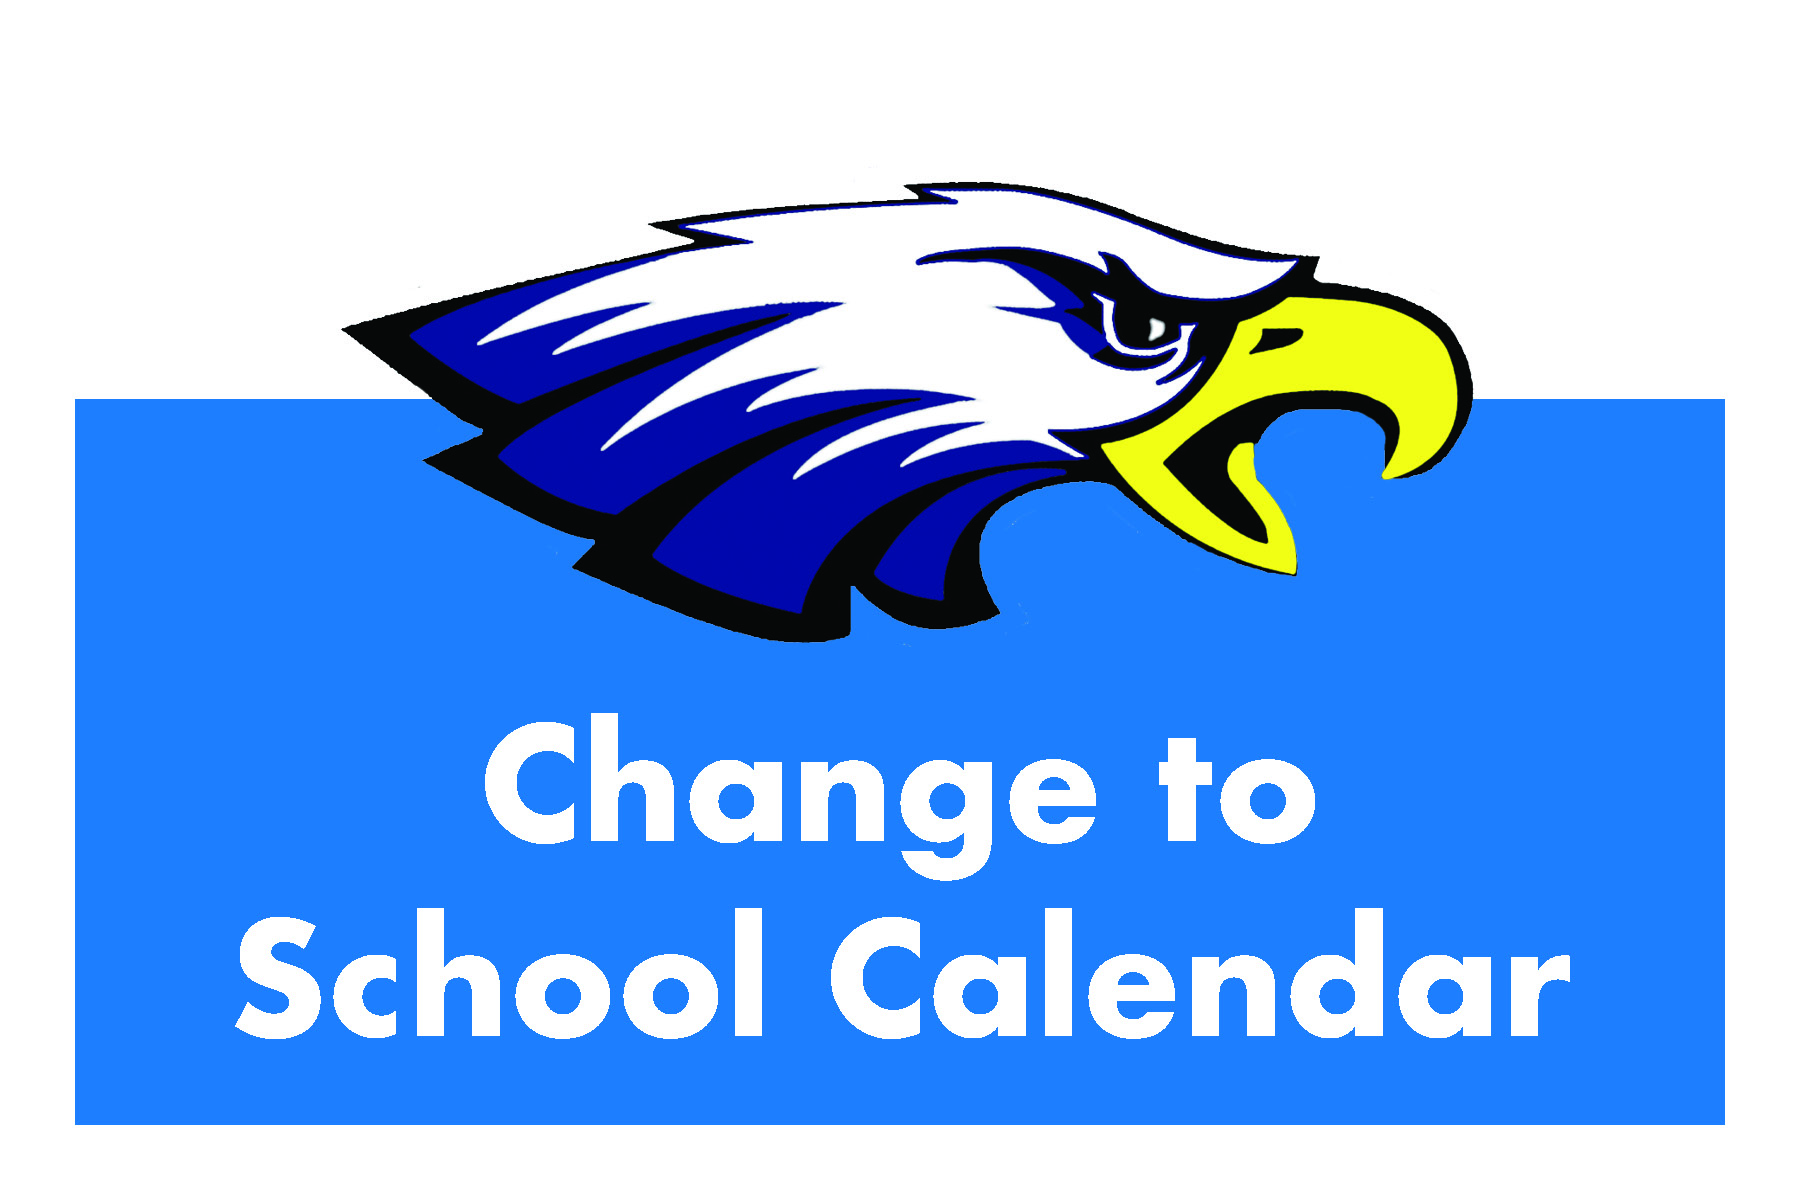 Change to School Calendar